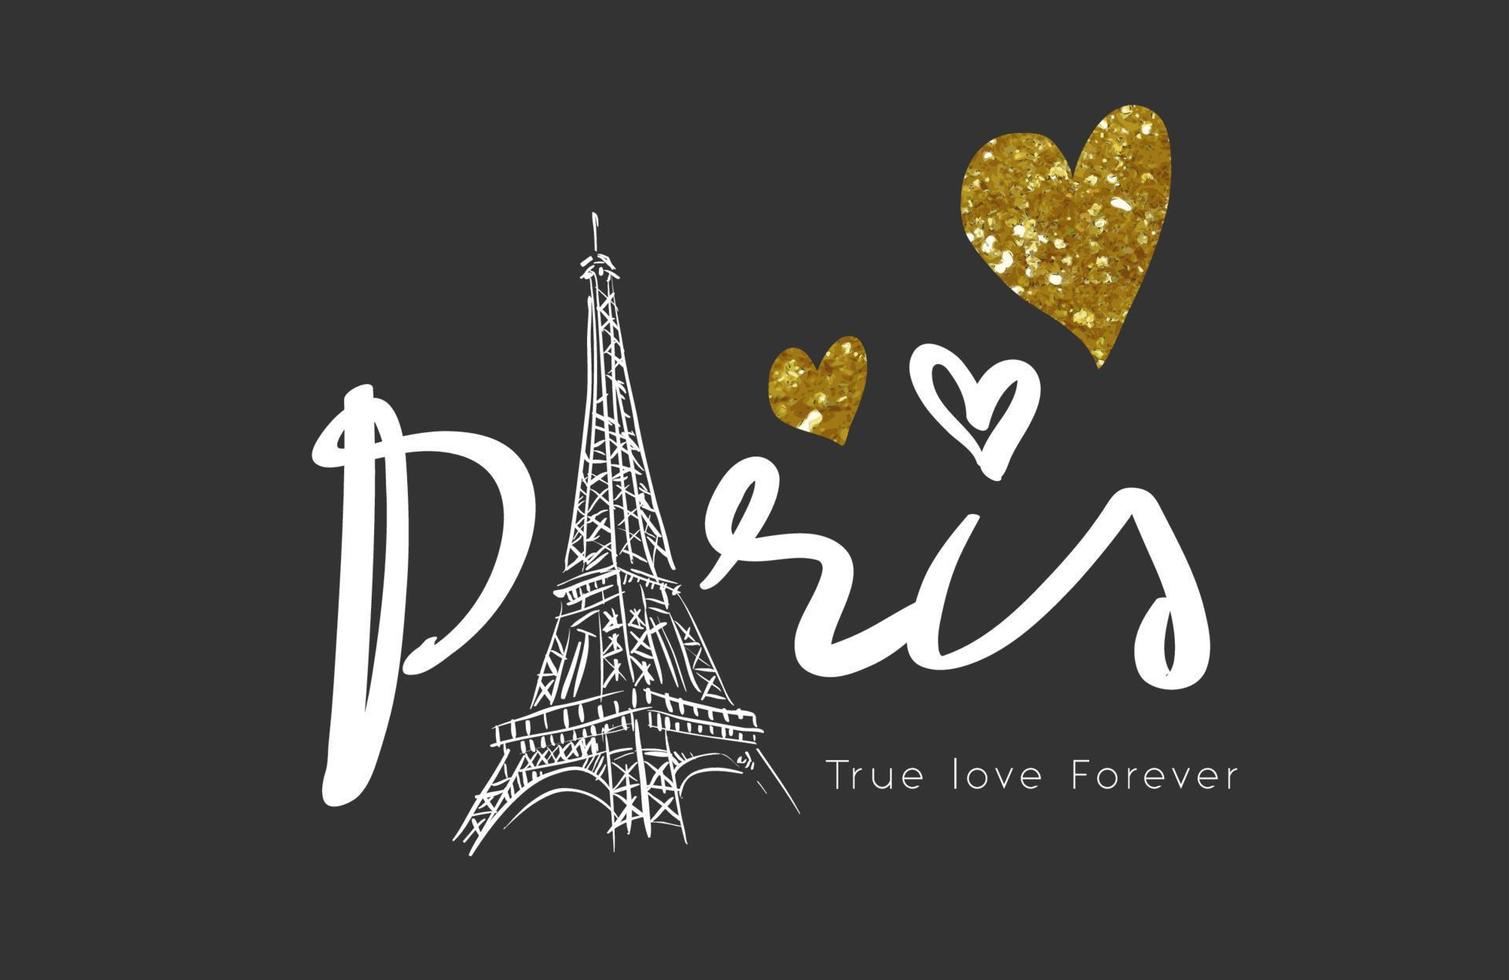 Parijs ware liefde voor altijd slogan met Eiffeltoren illustratie en glitter hart op zwarte achtergrond vector